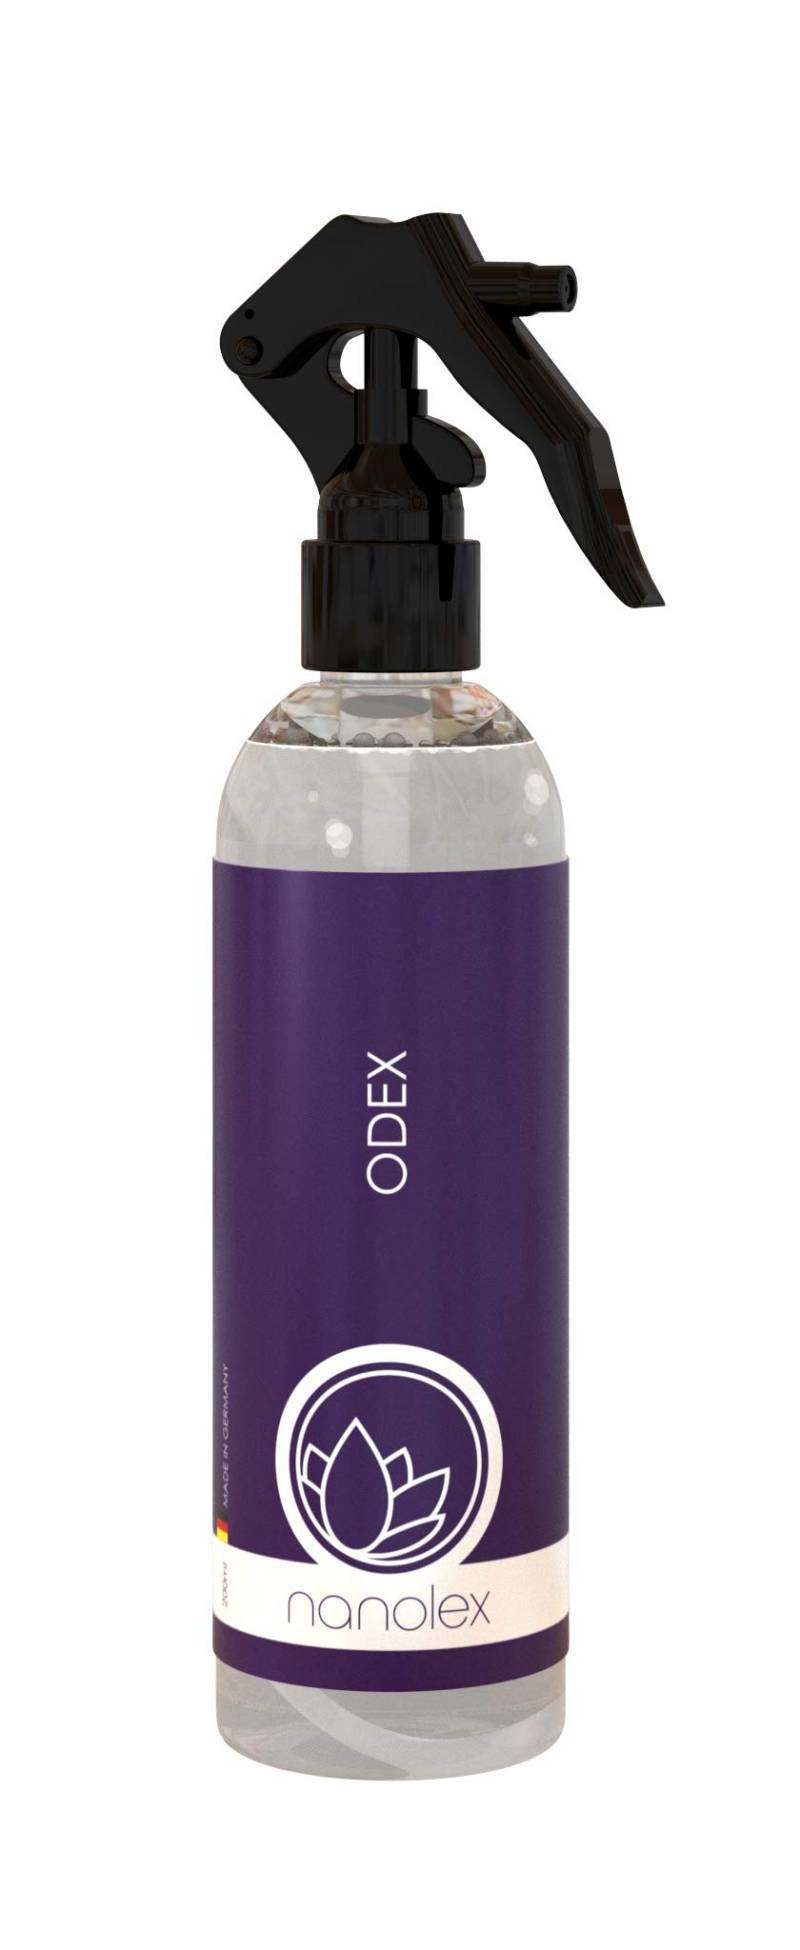 Nanolex Odex, Geruchsneutralisierer für die Autoinnenreinigung, effektiver Geruchsentferner gegen hartnäckige Gerüche im Auto (200 ml) von Nanolex